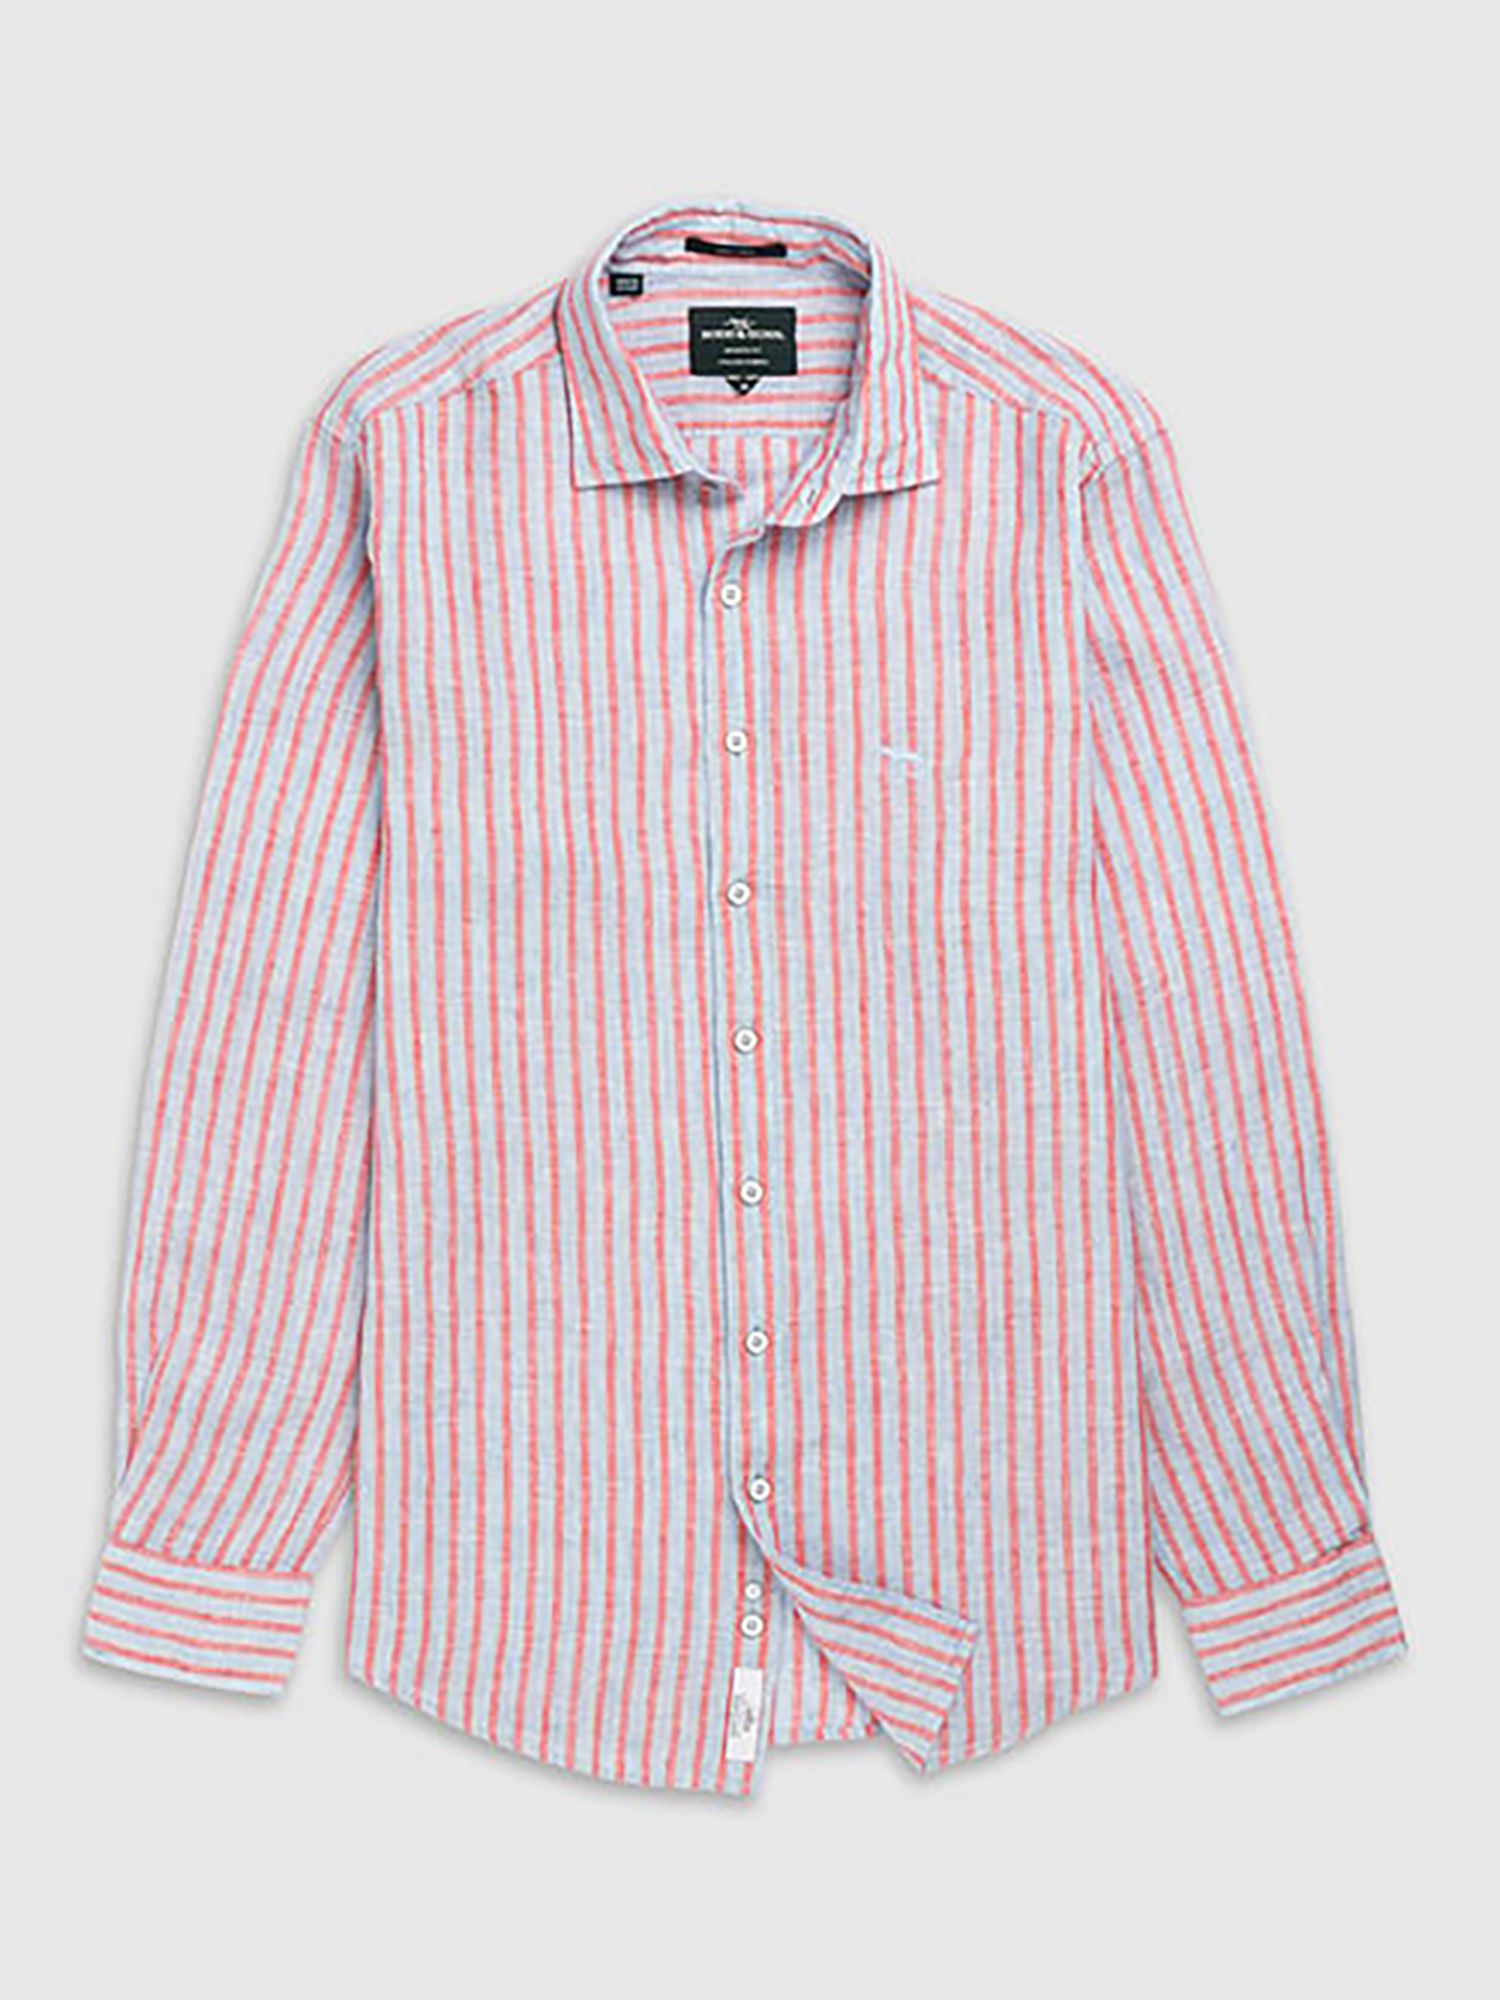 Rodd & Gunn Mclean Park Linen Striped Shirt, Sky Blue/Red, XS